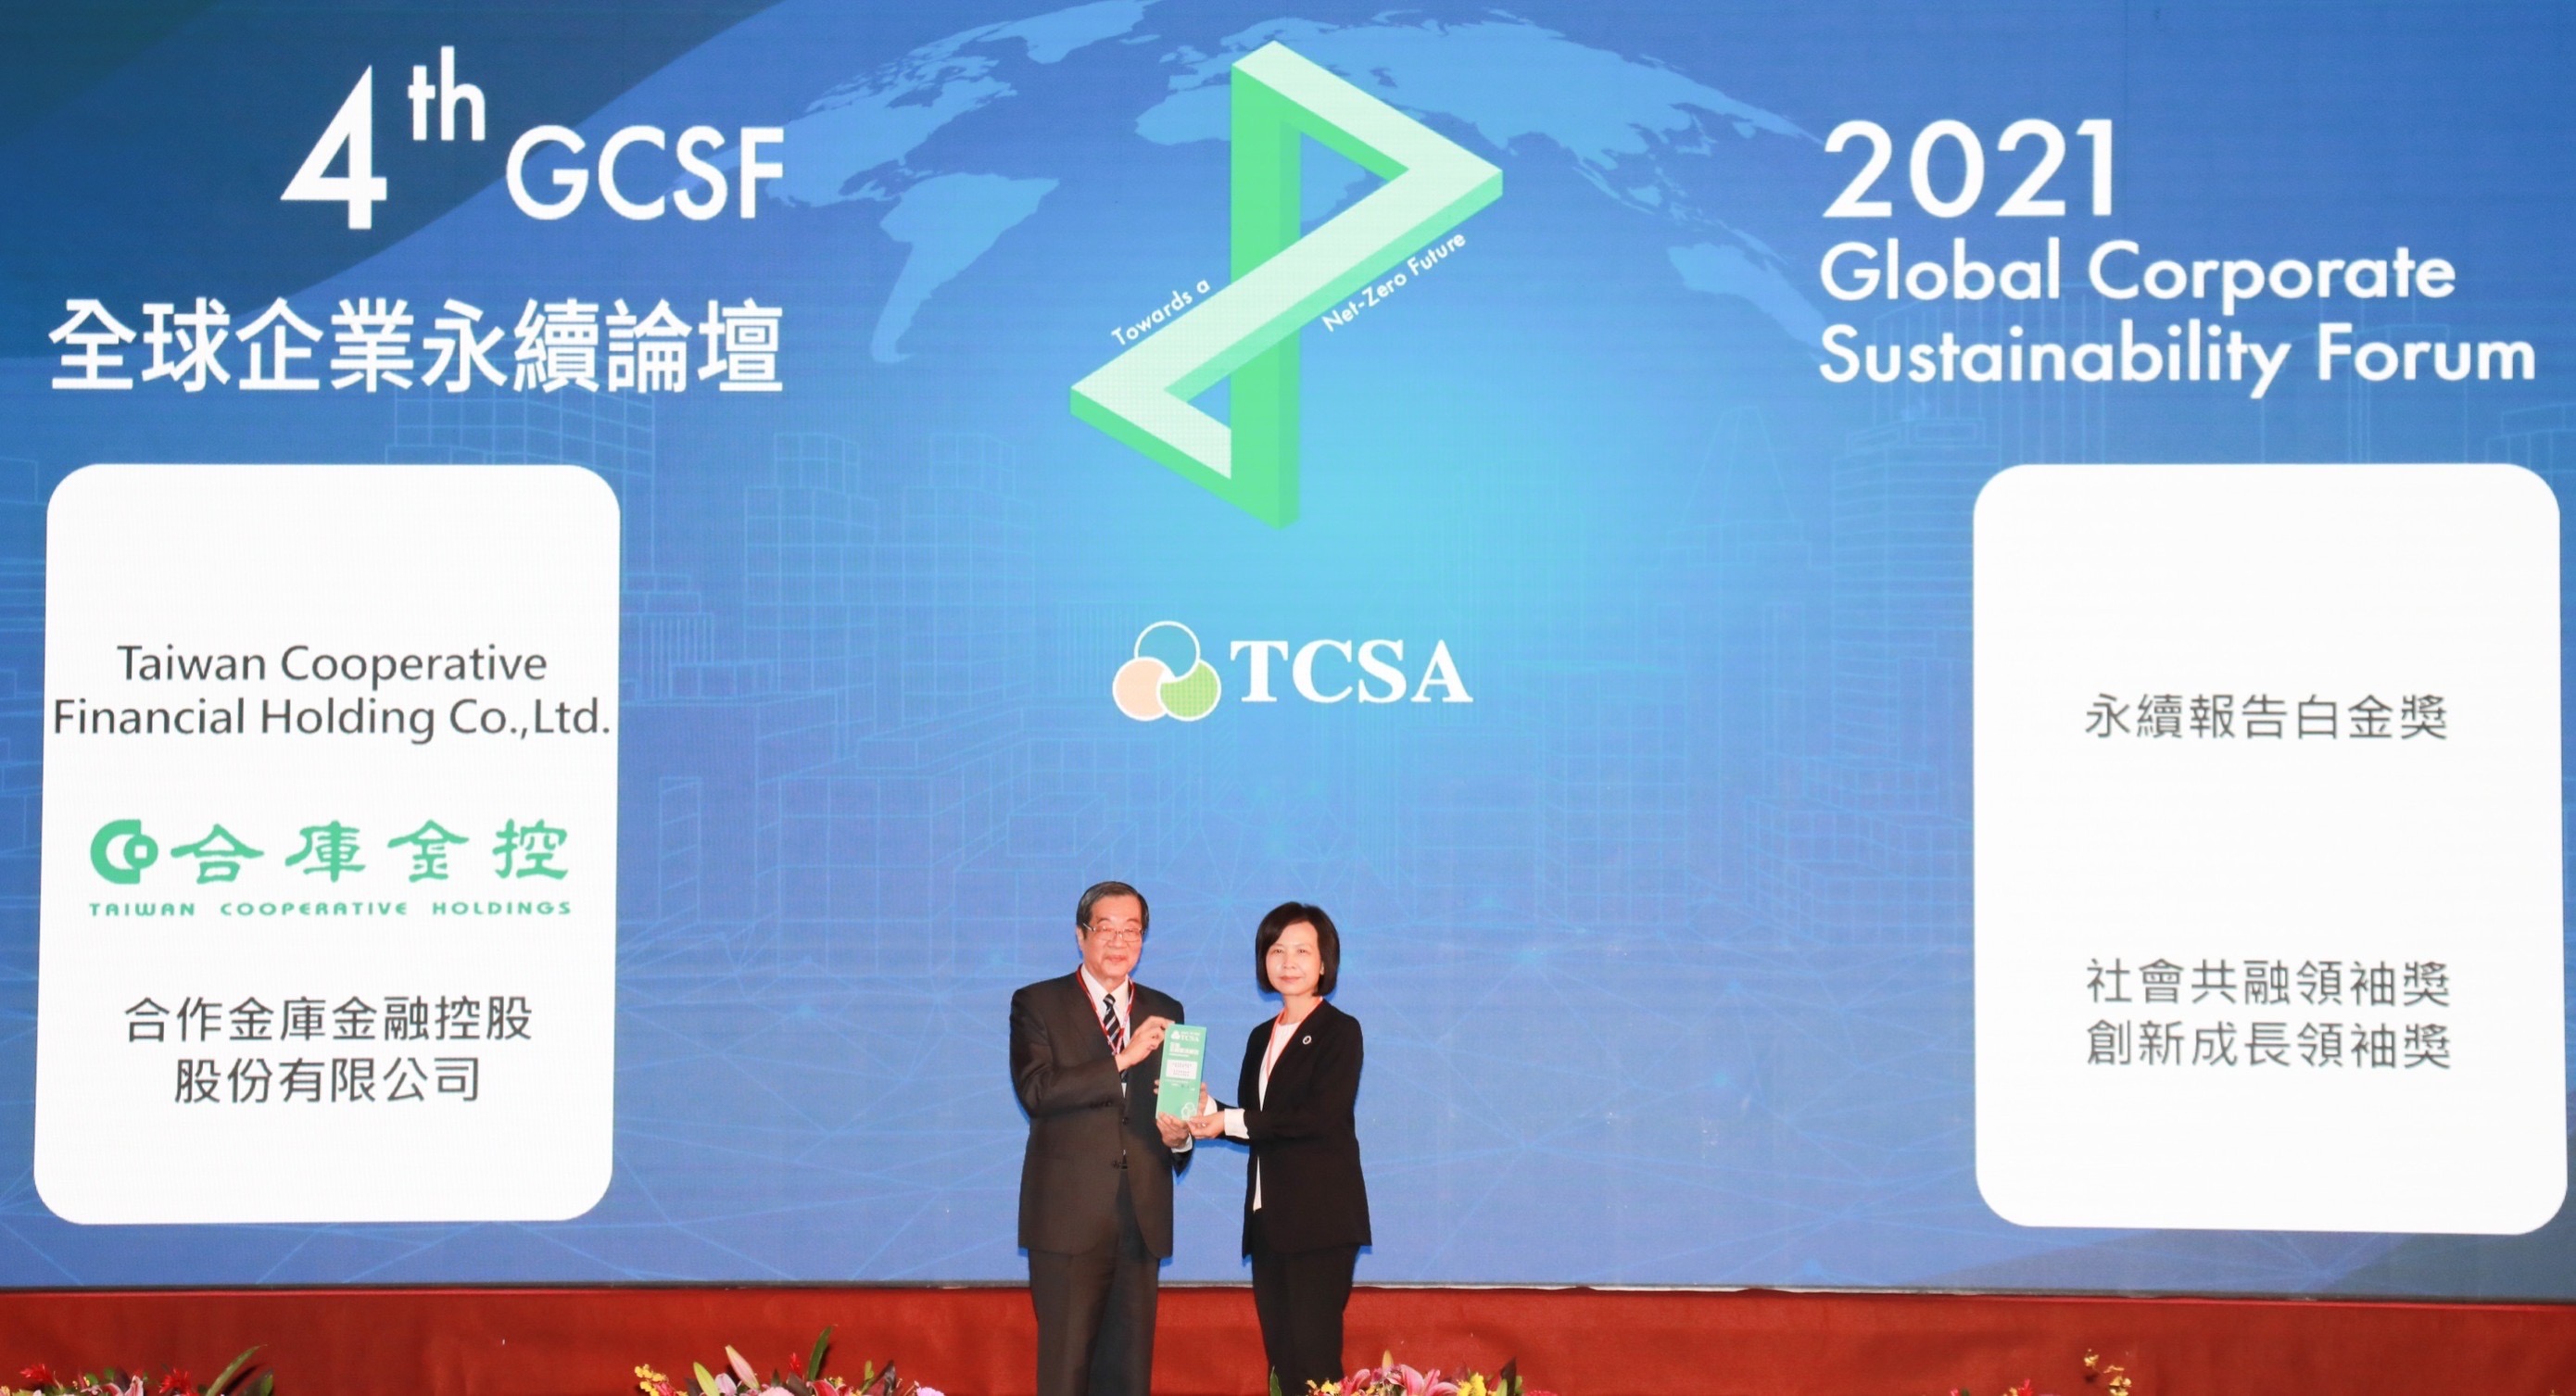 合庫金控榮獲TCSA台灣企業永續報告白金獎、「社會共融領袖獎」及「創新成長領袖獎」三項殊榮